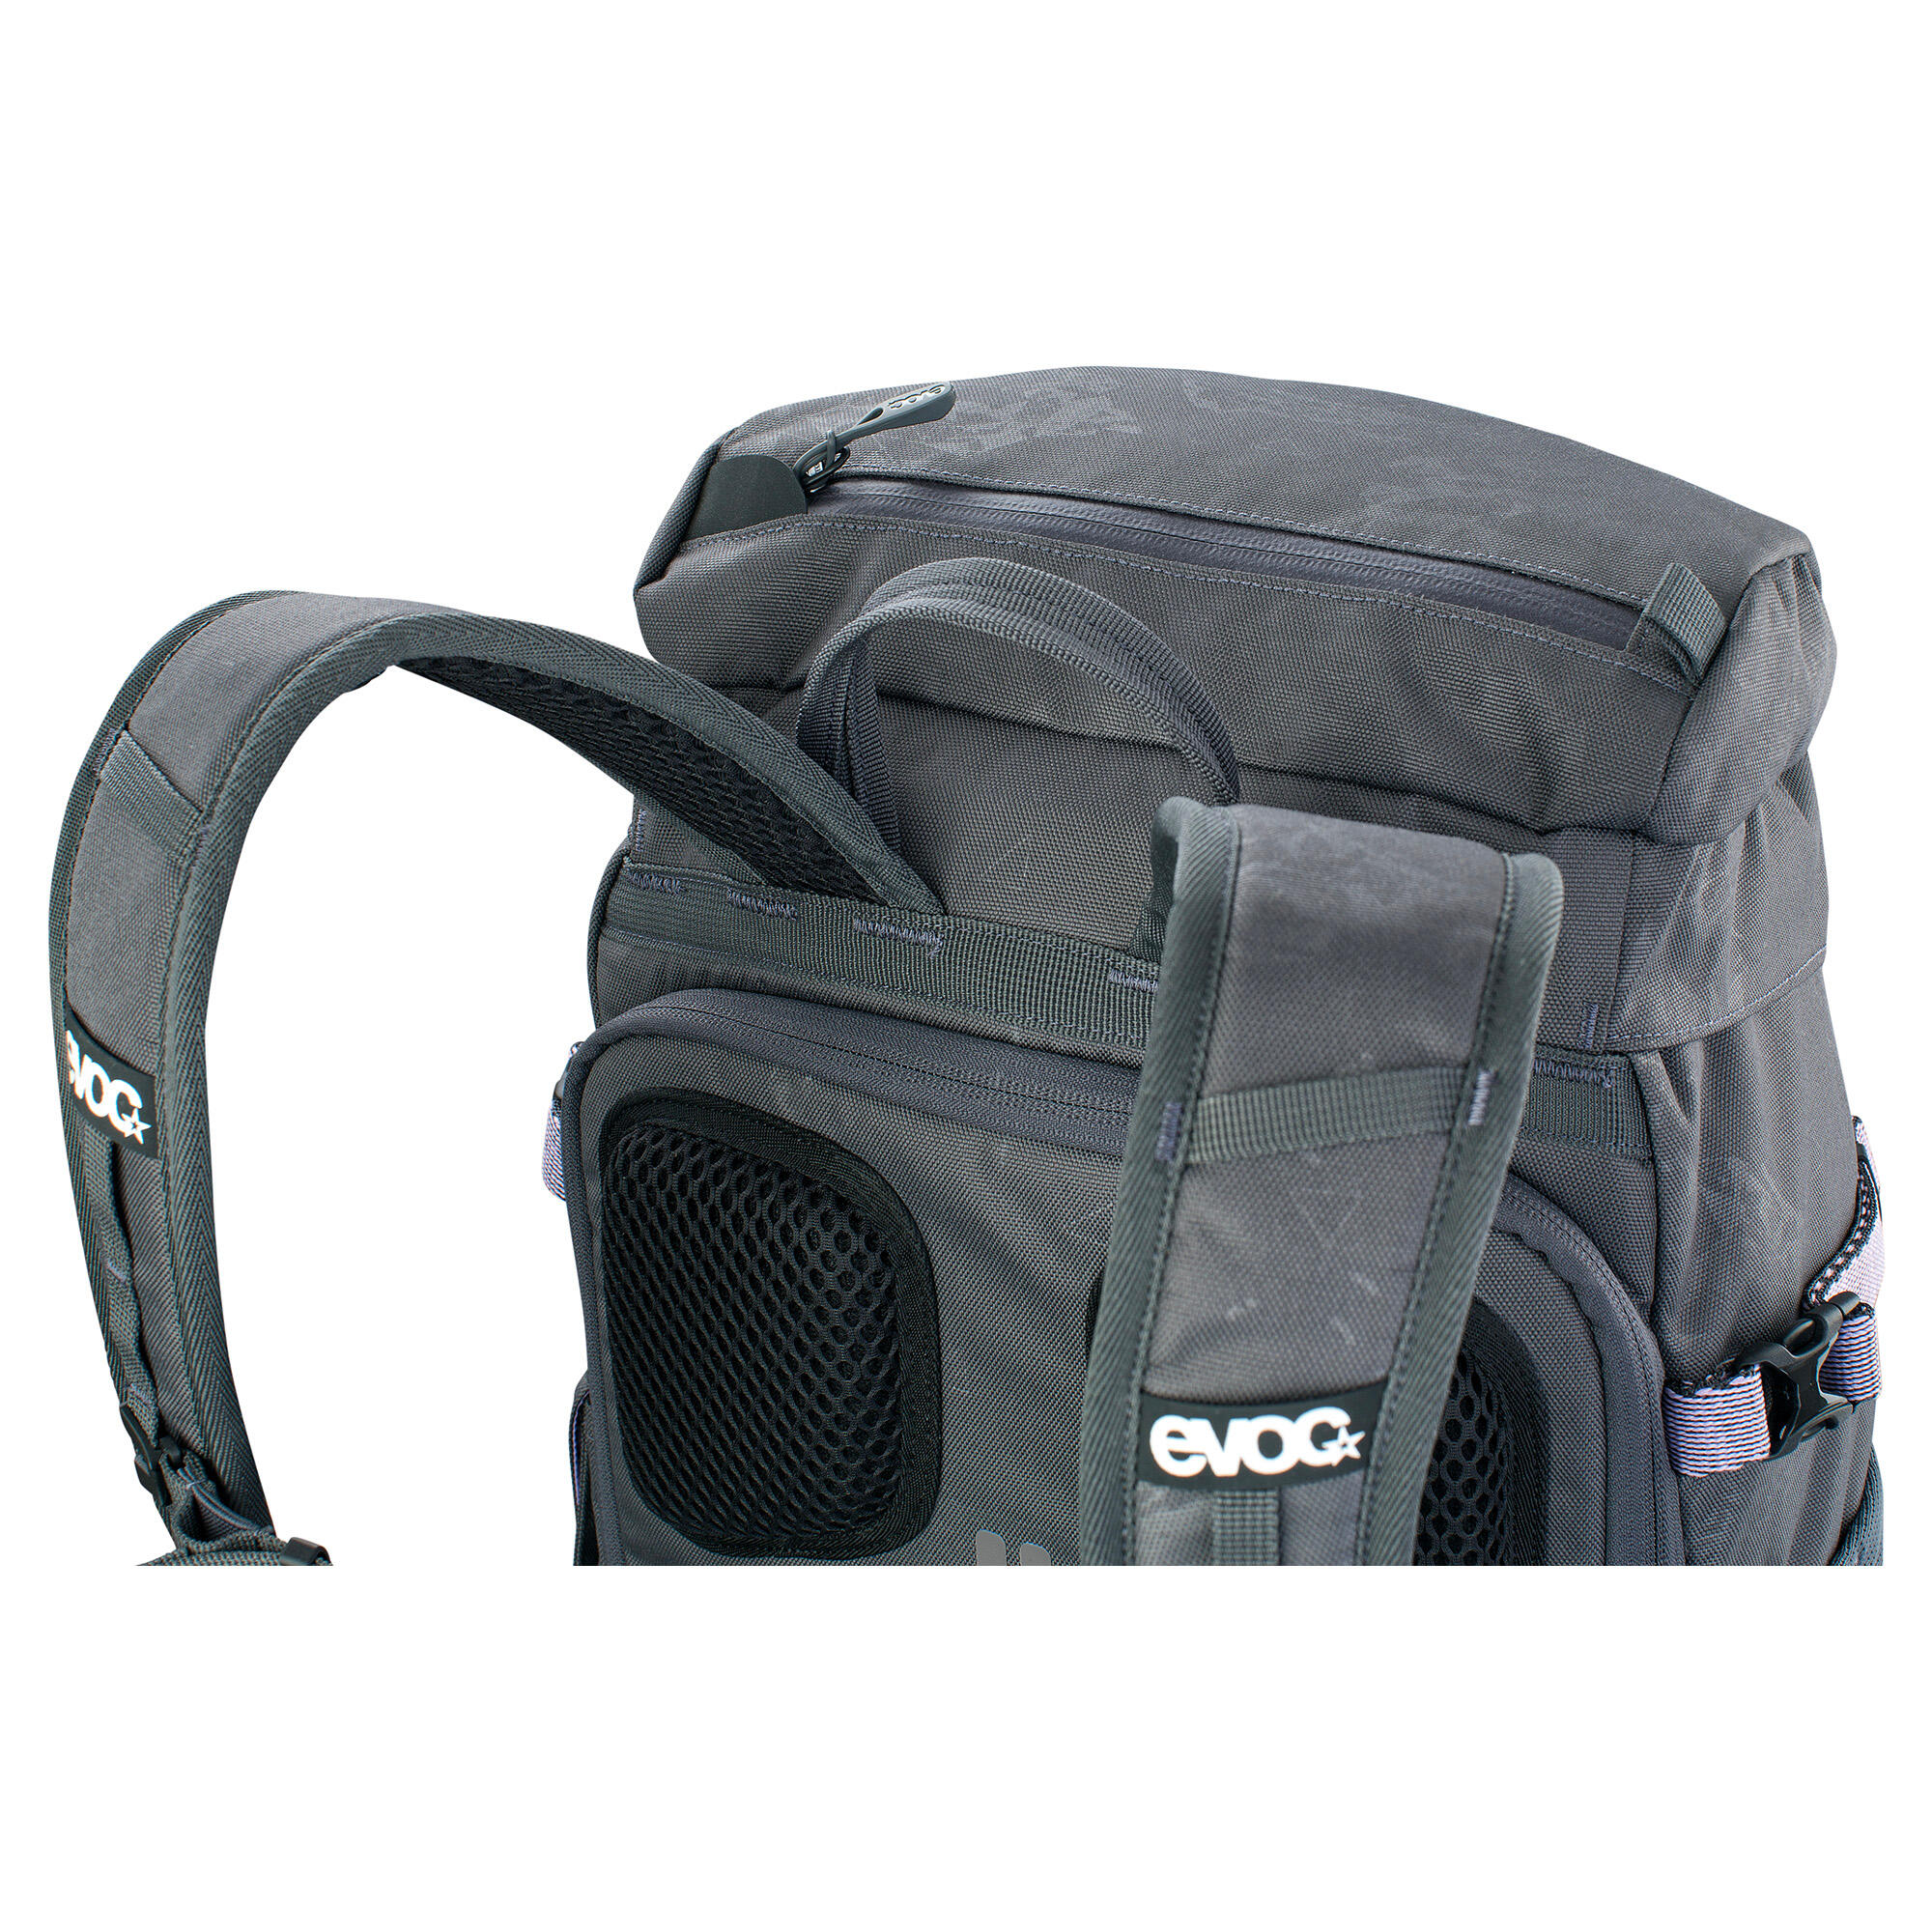 EVOC Mission Pro Backpack 7/7